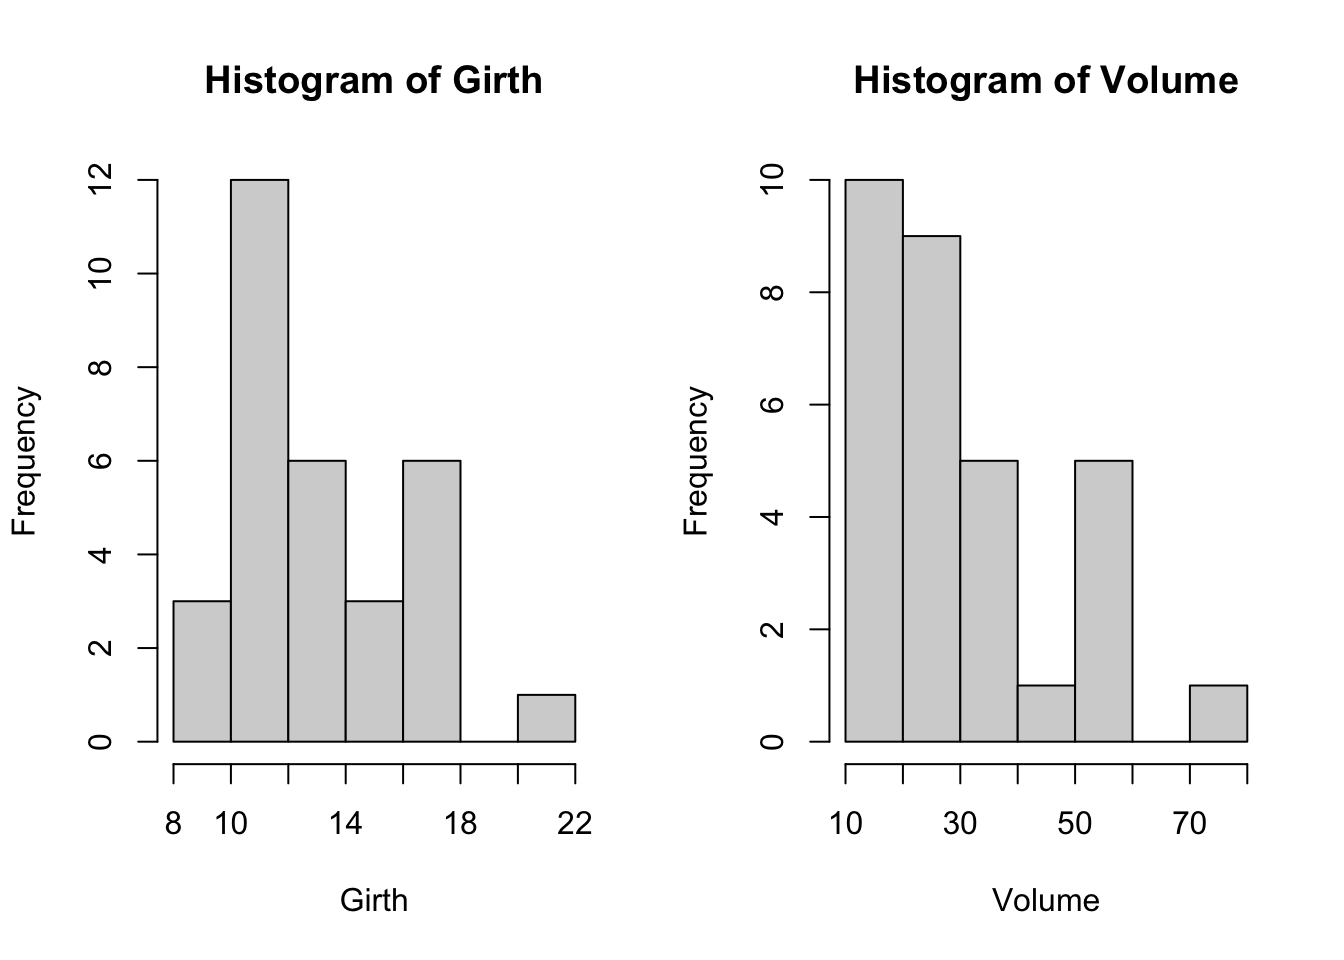 Histogrammes de Volume et Girth